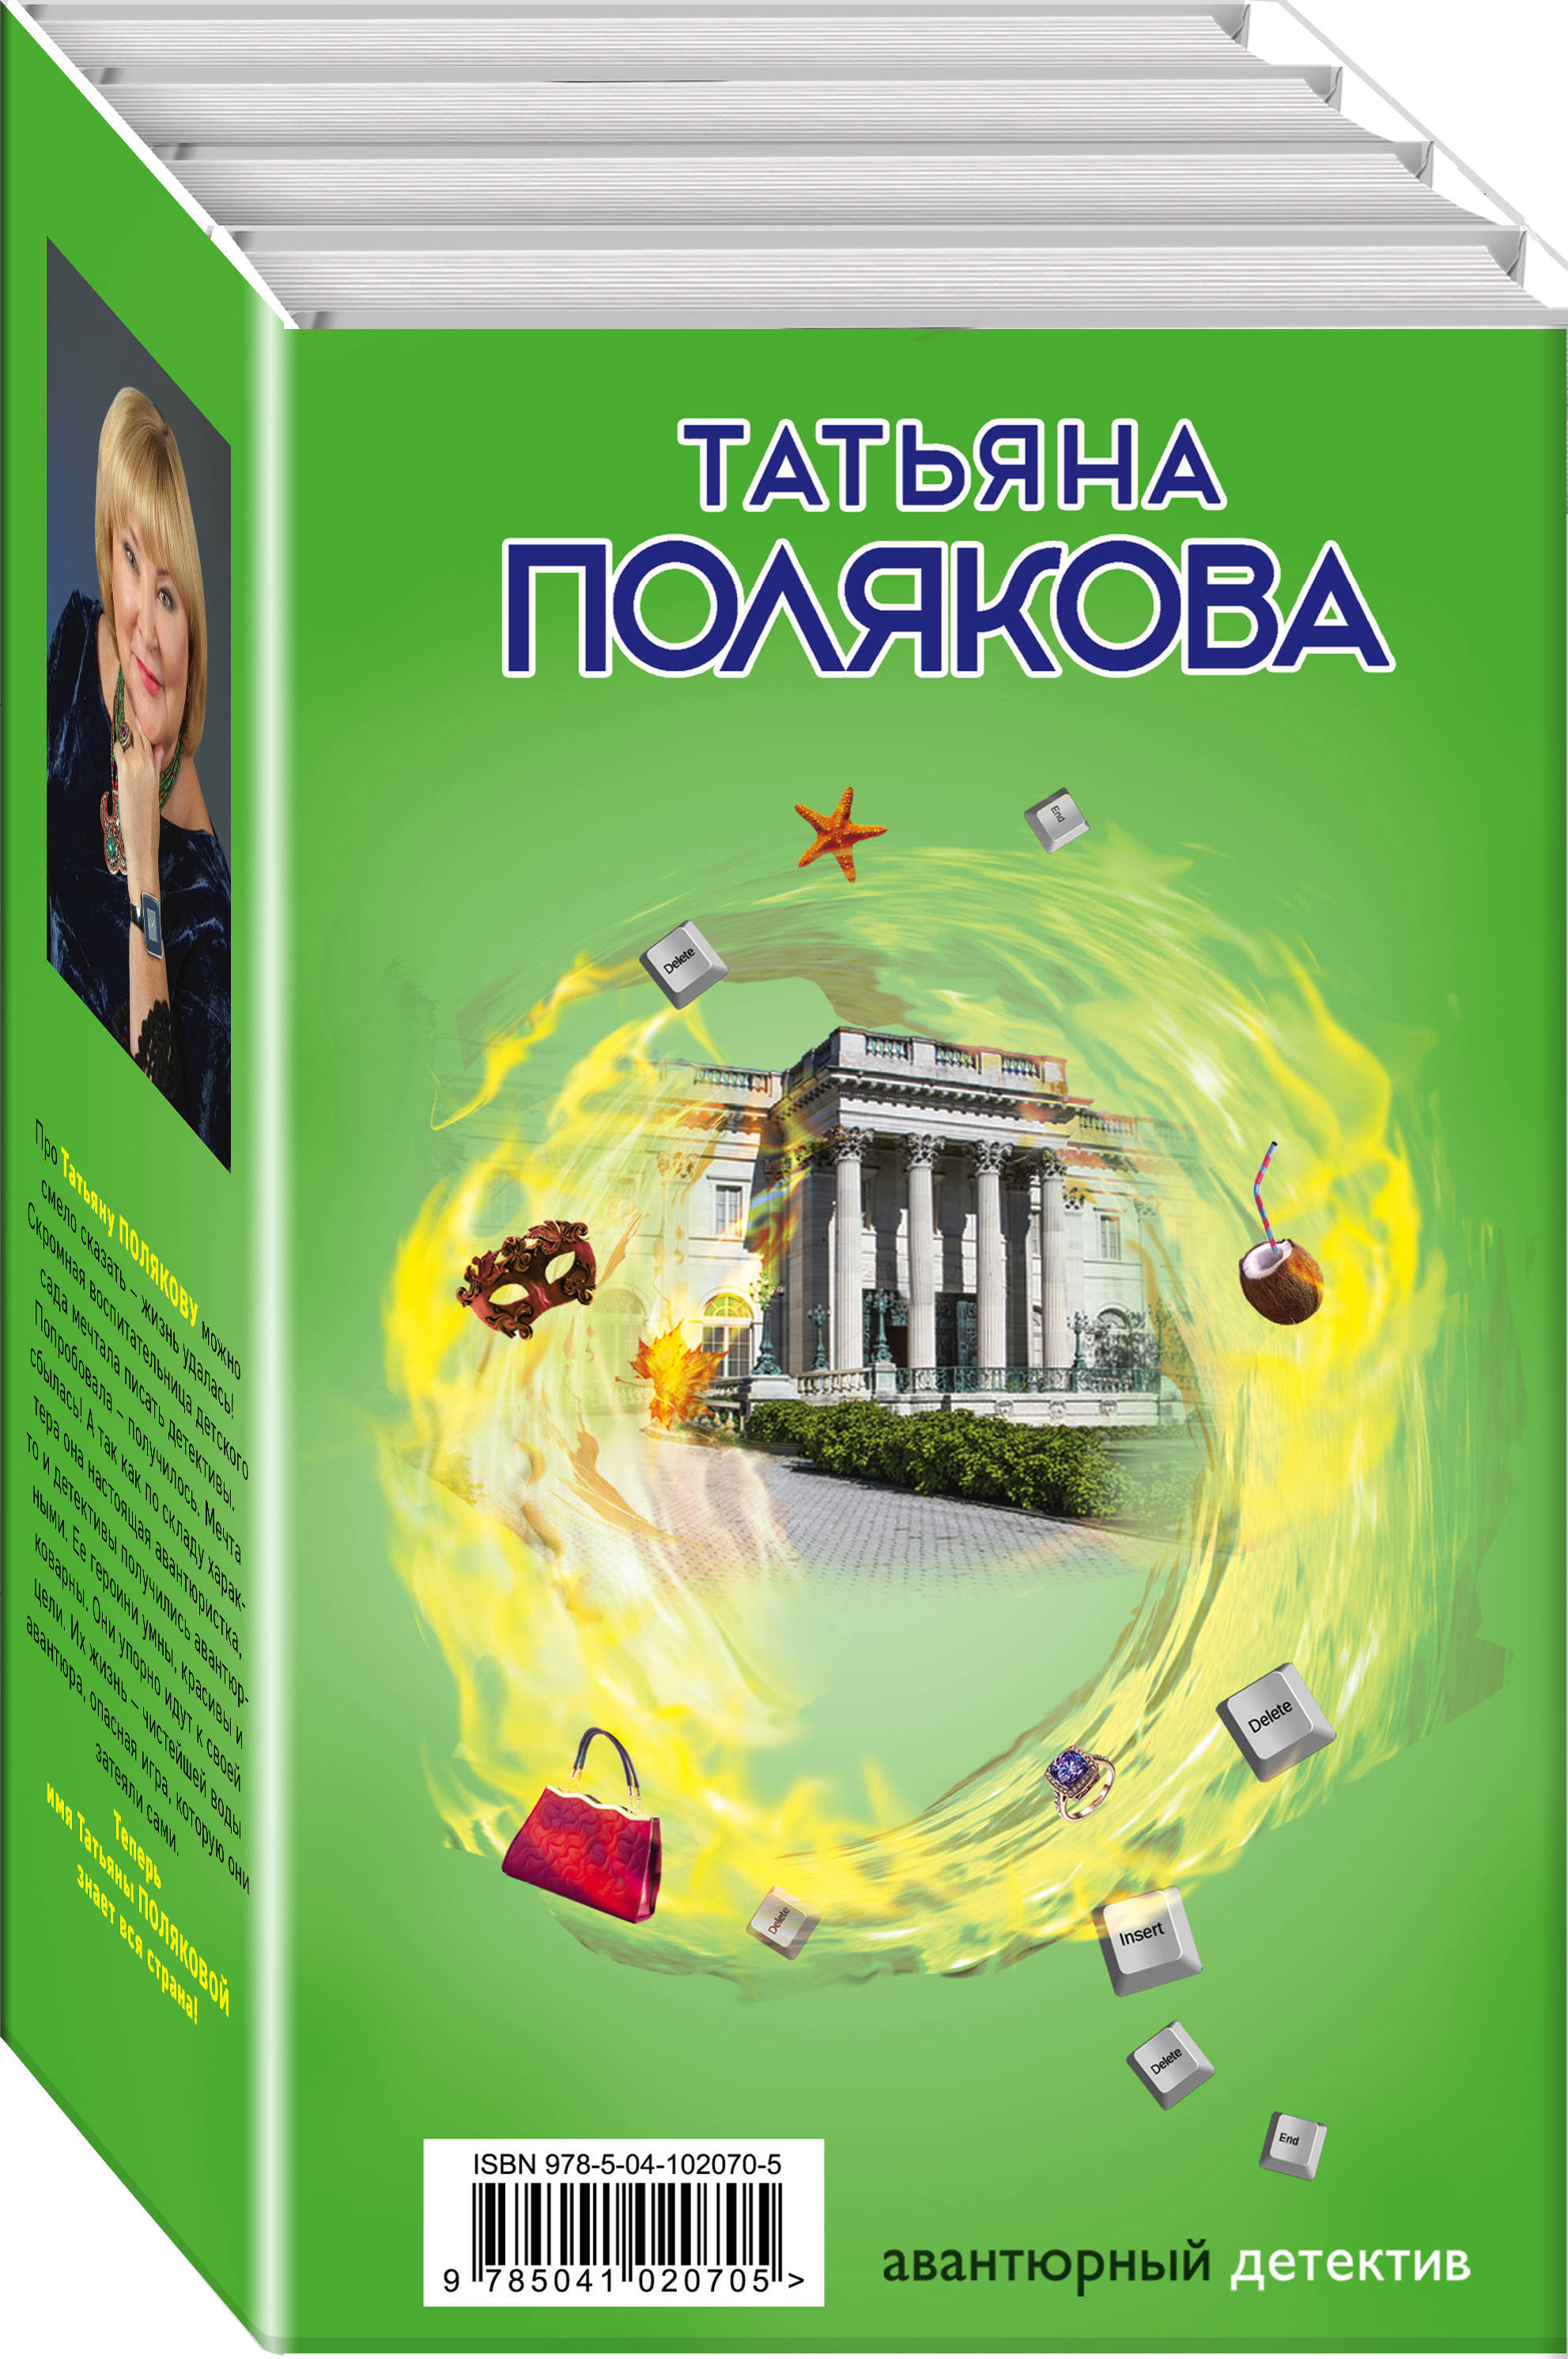 Полякова Татьяна Викторовна Авантюрный детектив (комплект из 4 книг)